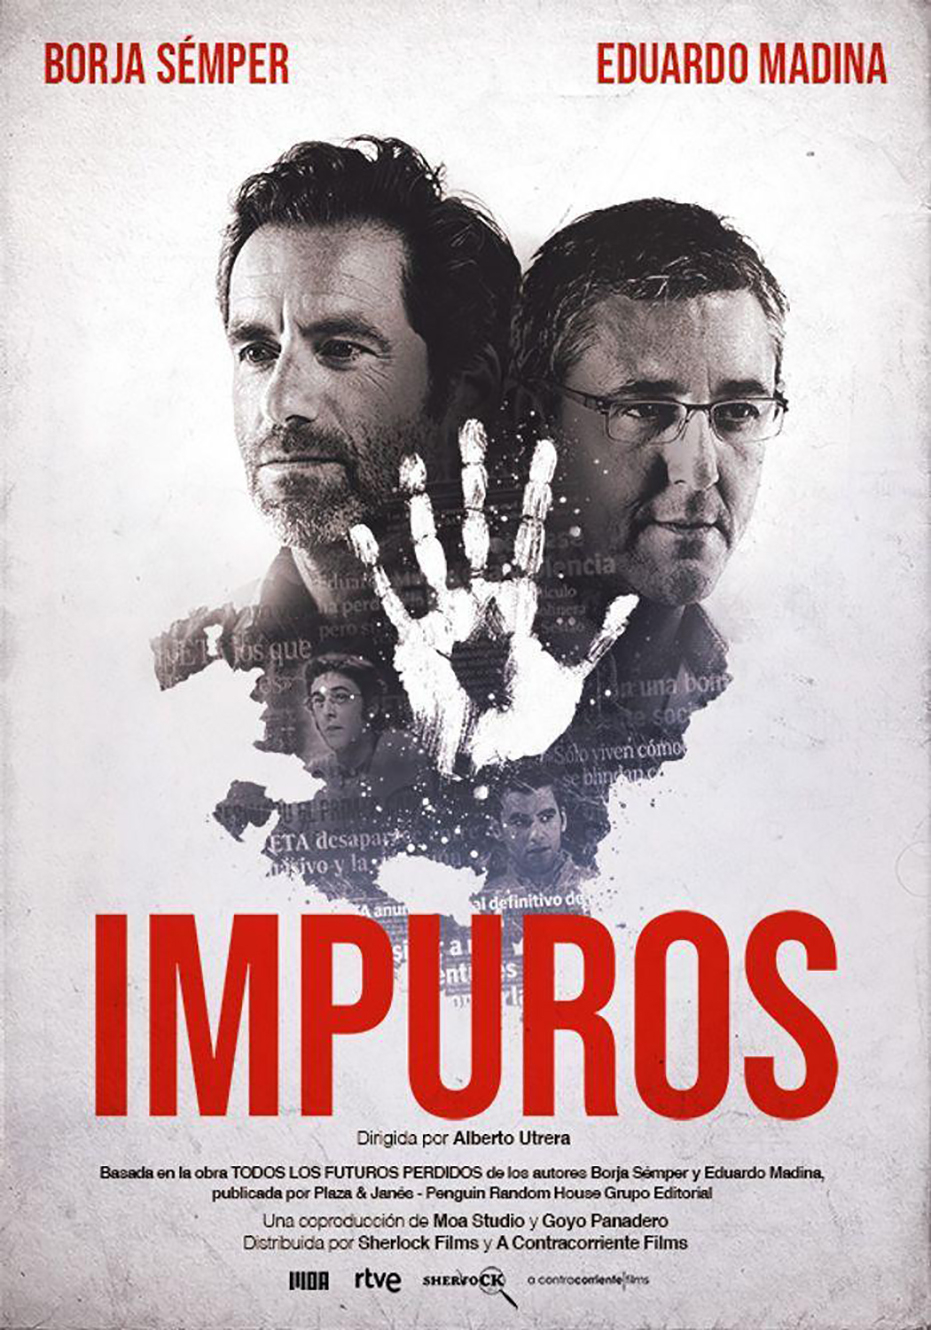 Proyección del documental ‘Impuros’. Coloquio posterior con Eduardo Madina y Borja Semper 